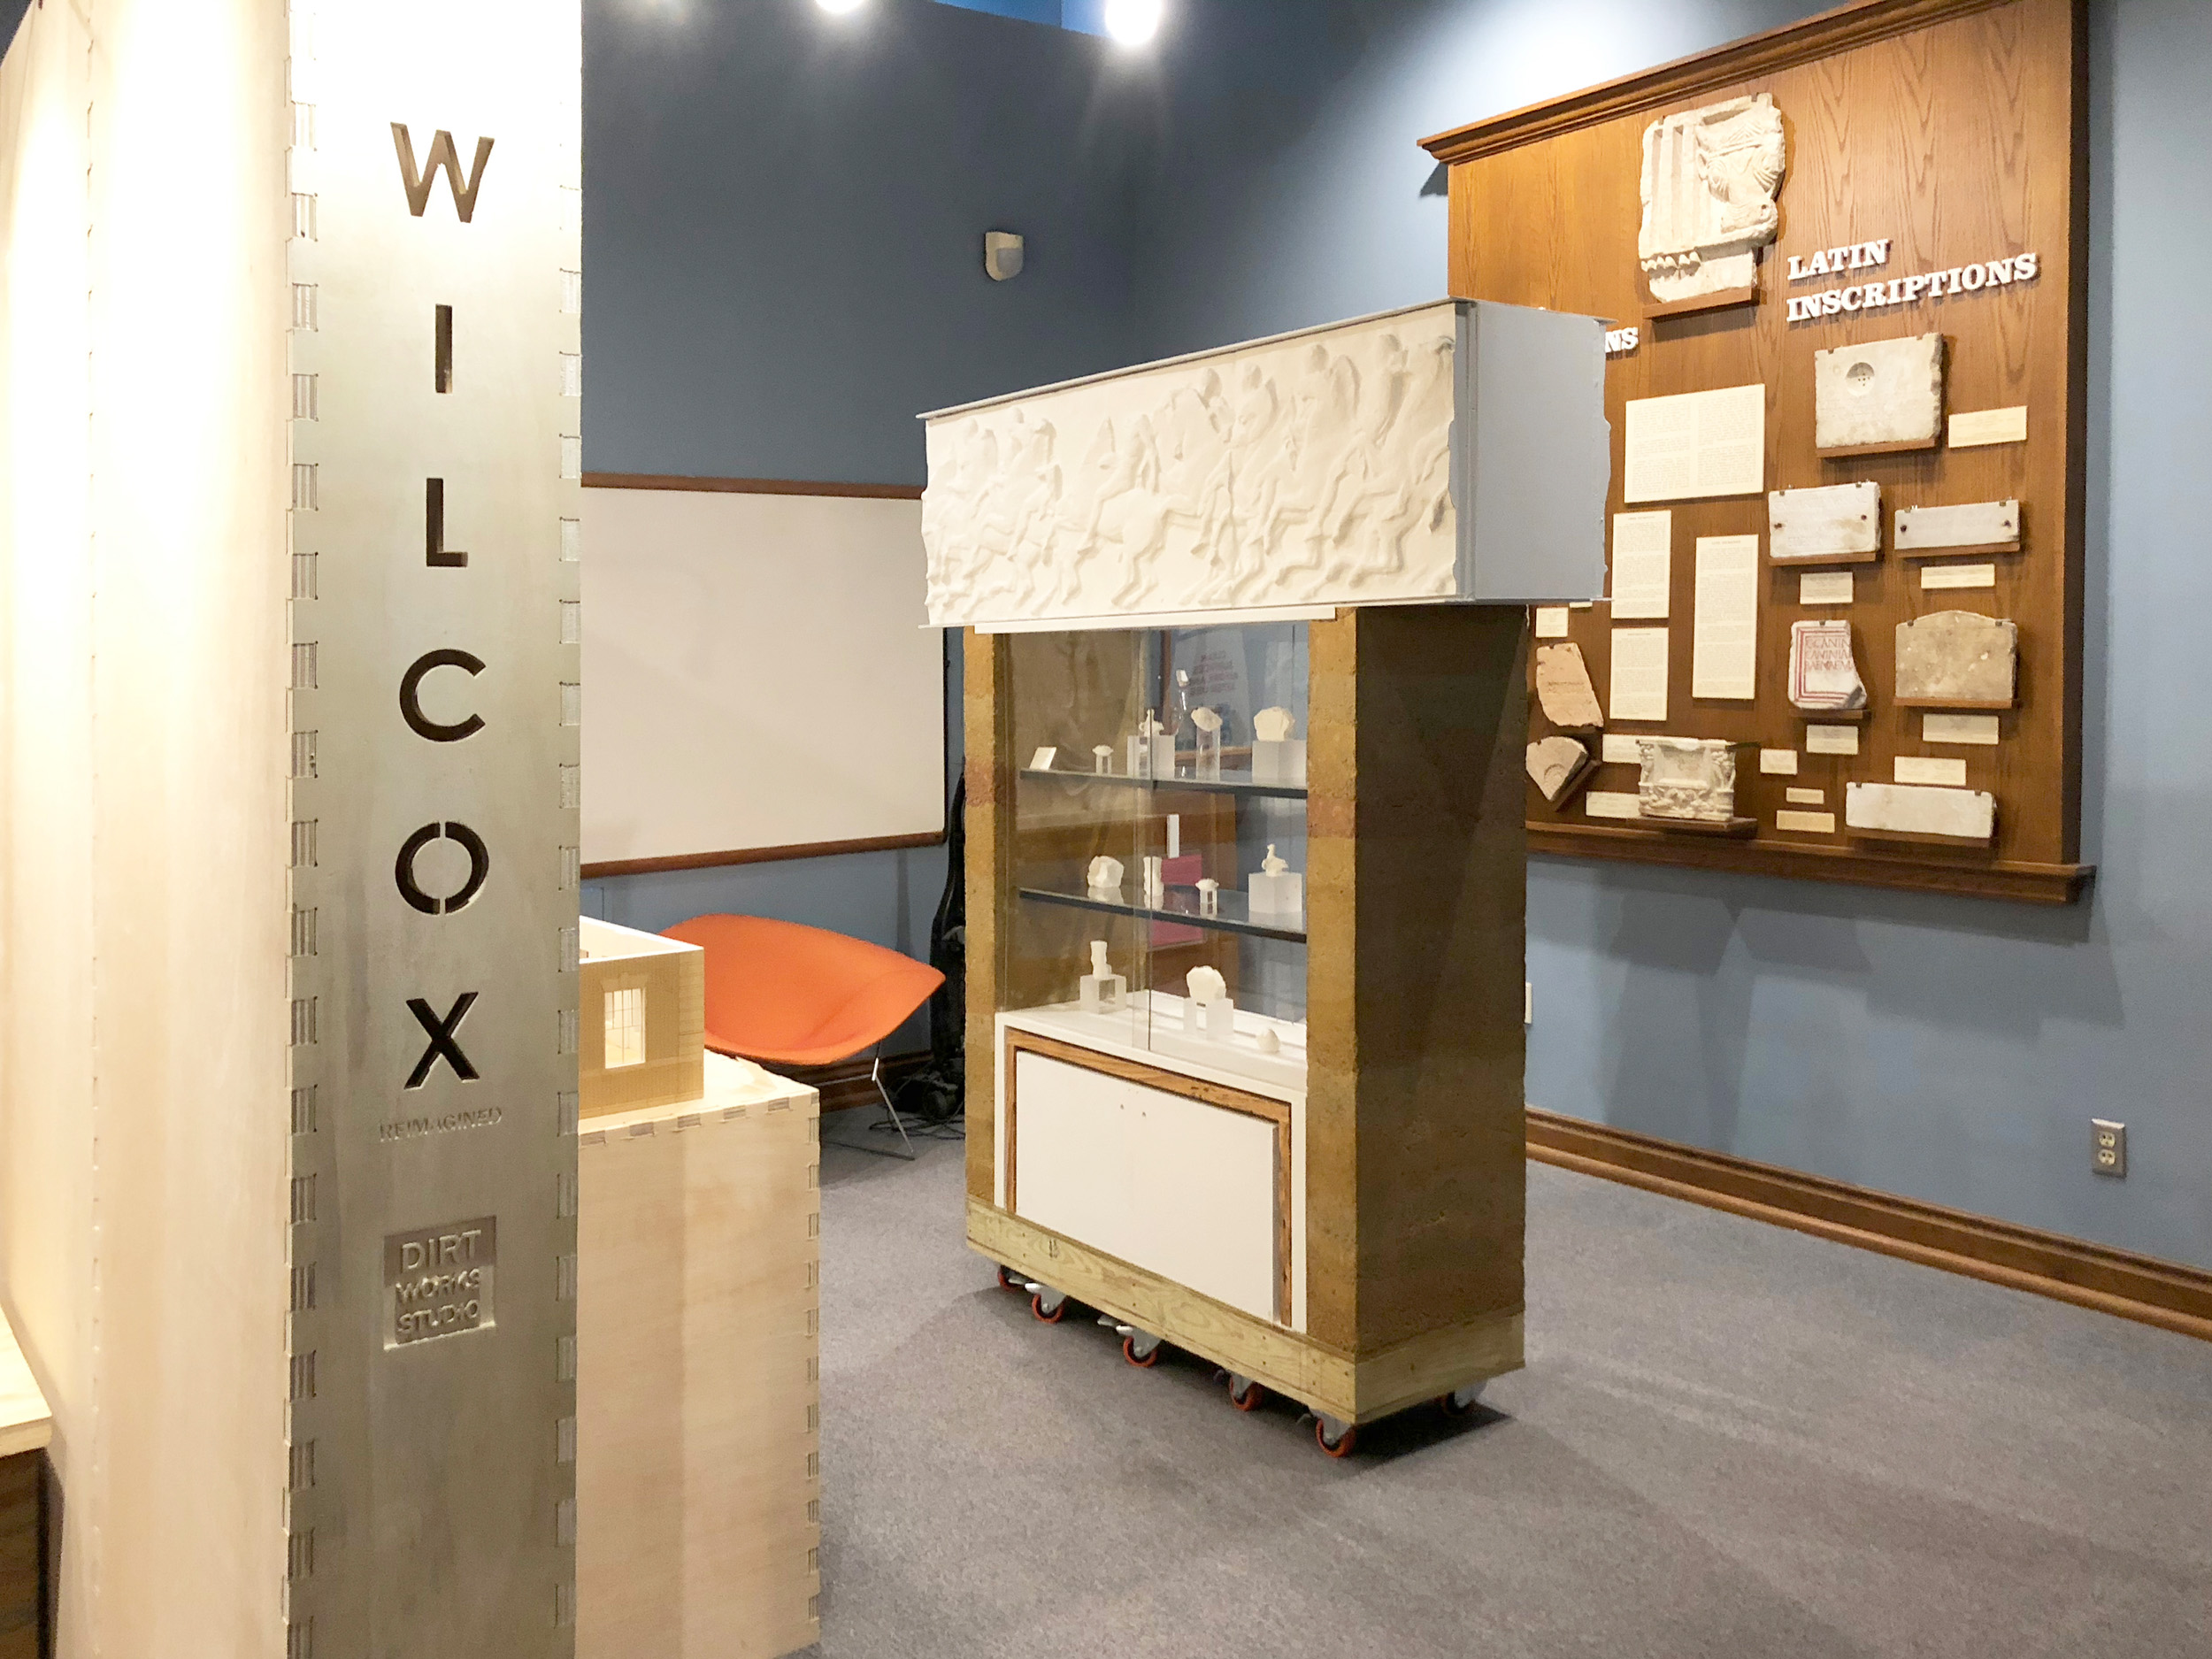 Wilcox Classical Museum, Team B, exhibition